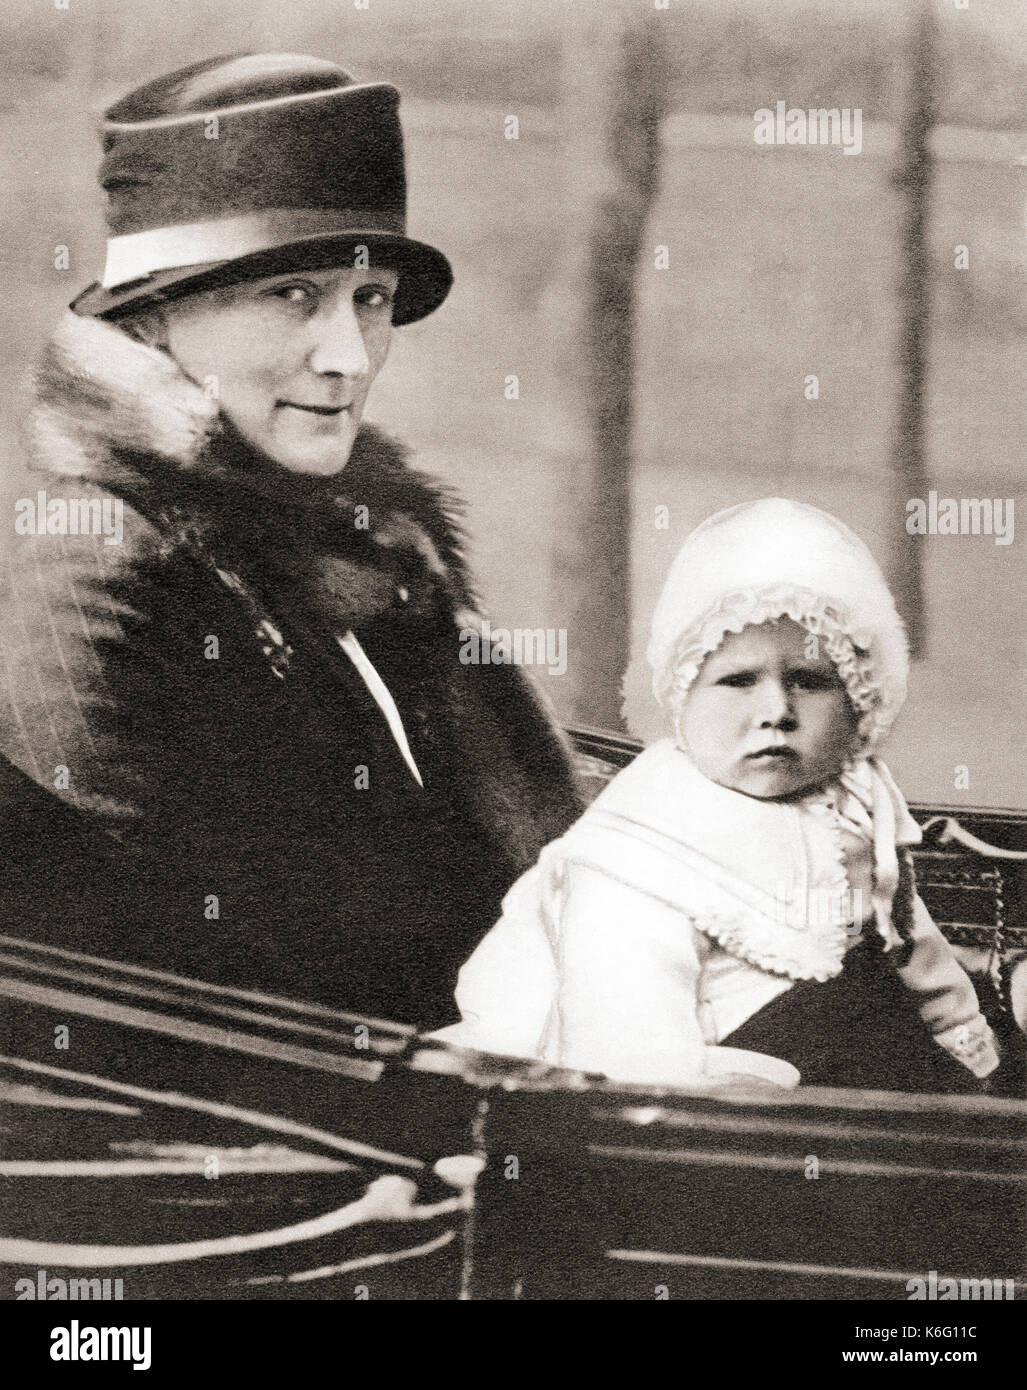 Principessa Elisabetta di York, futura regina Elisabetta II, 1926 - 2022, visto qui nel 1928 di 2 anni con la sua nanna, Clara Knight, noto come 'Allah'. Dal Libro di incoronazione di Re Giorgio VI e Regina Elisabetta, pubblicato nel 1937. Foto Stock